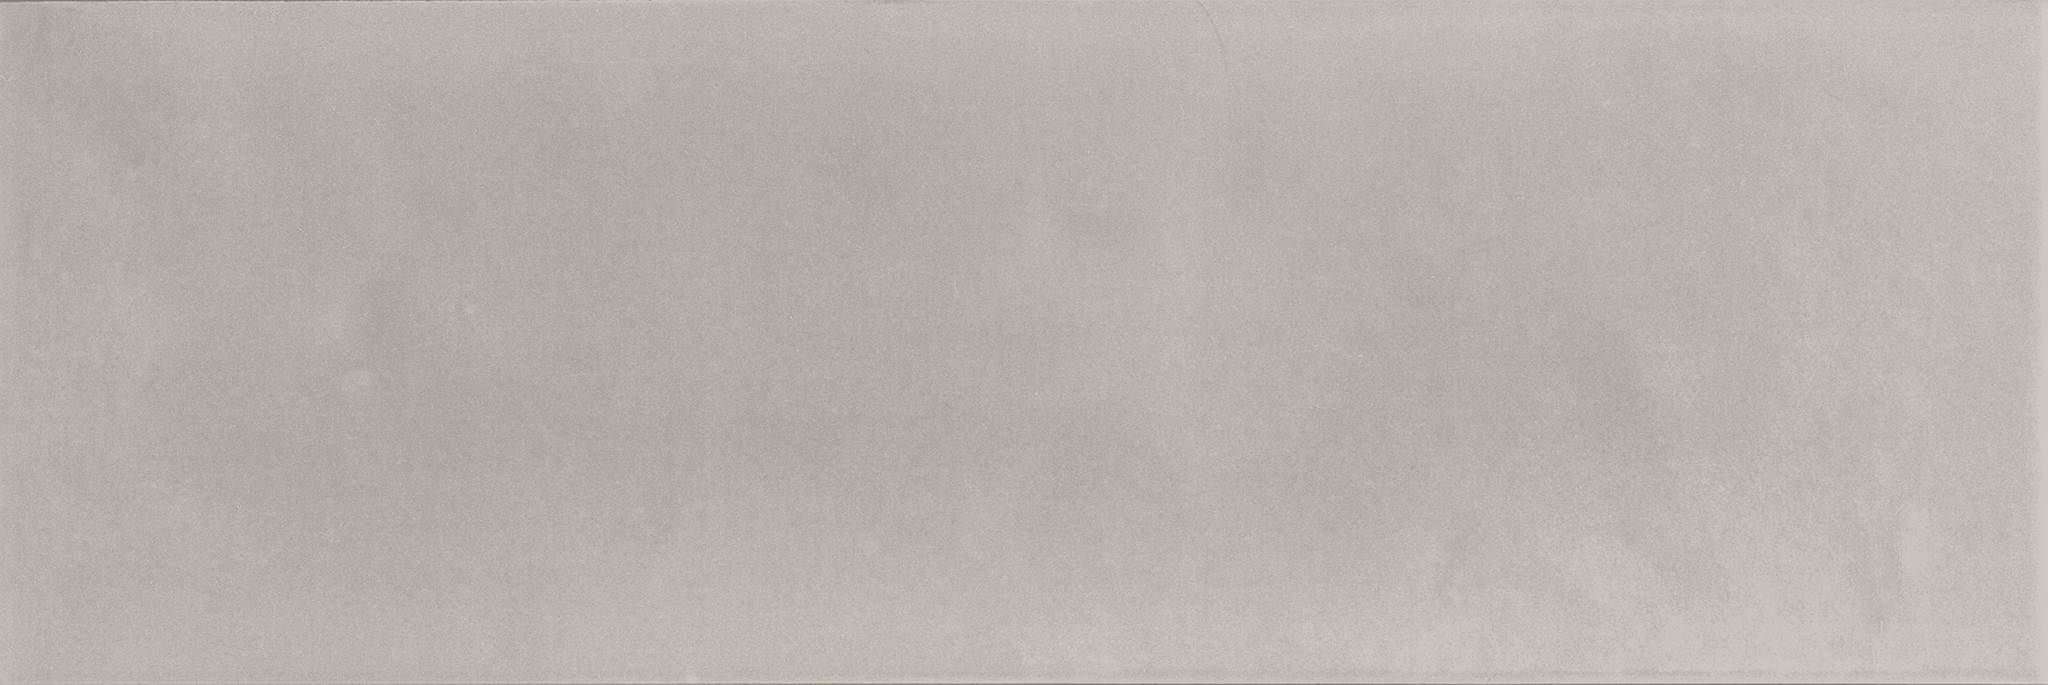 Керамическая плитка Absolut Keramika Perla Milano Brillo, цвет серый, поверхность глянцевая, прямоугольник, 100x300